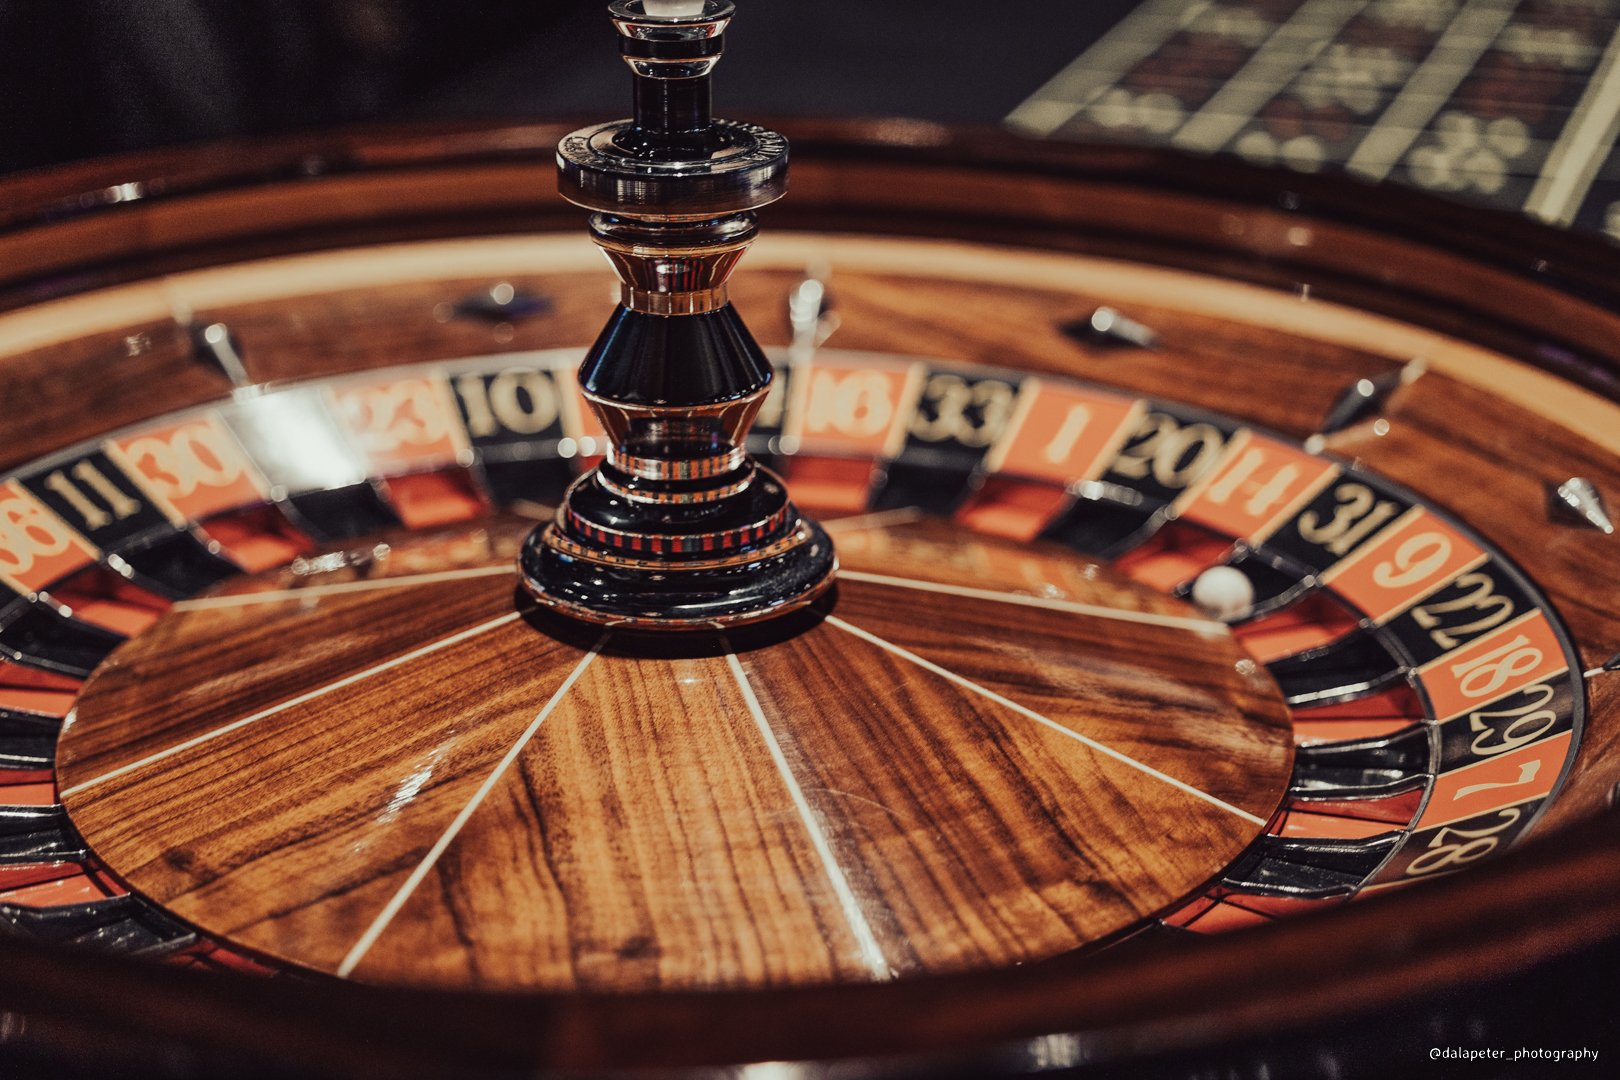 Bild av ett roulettebord. Foto: Peter Gunnebro, Dalapeter Photography